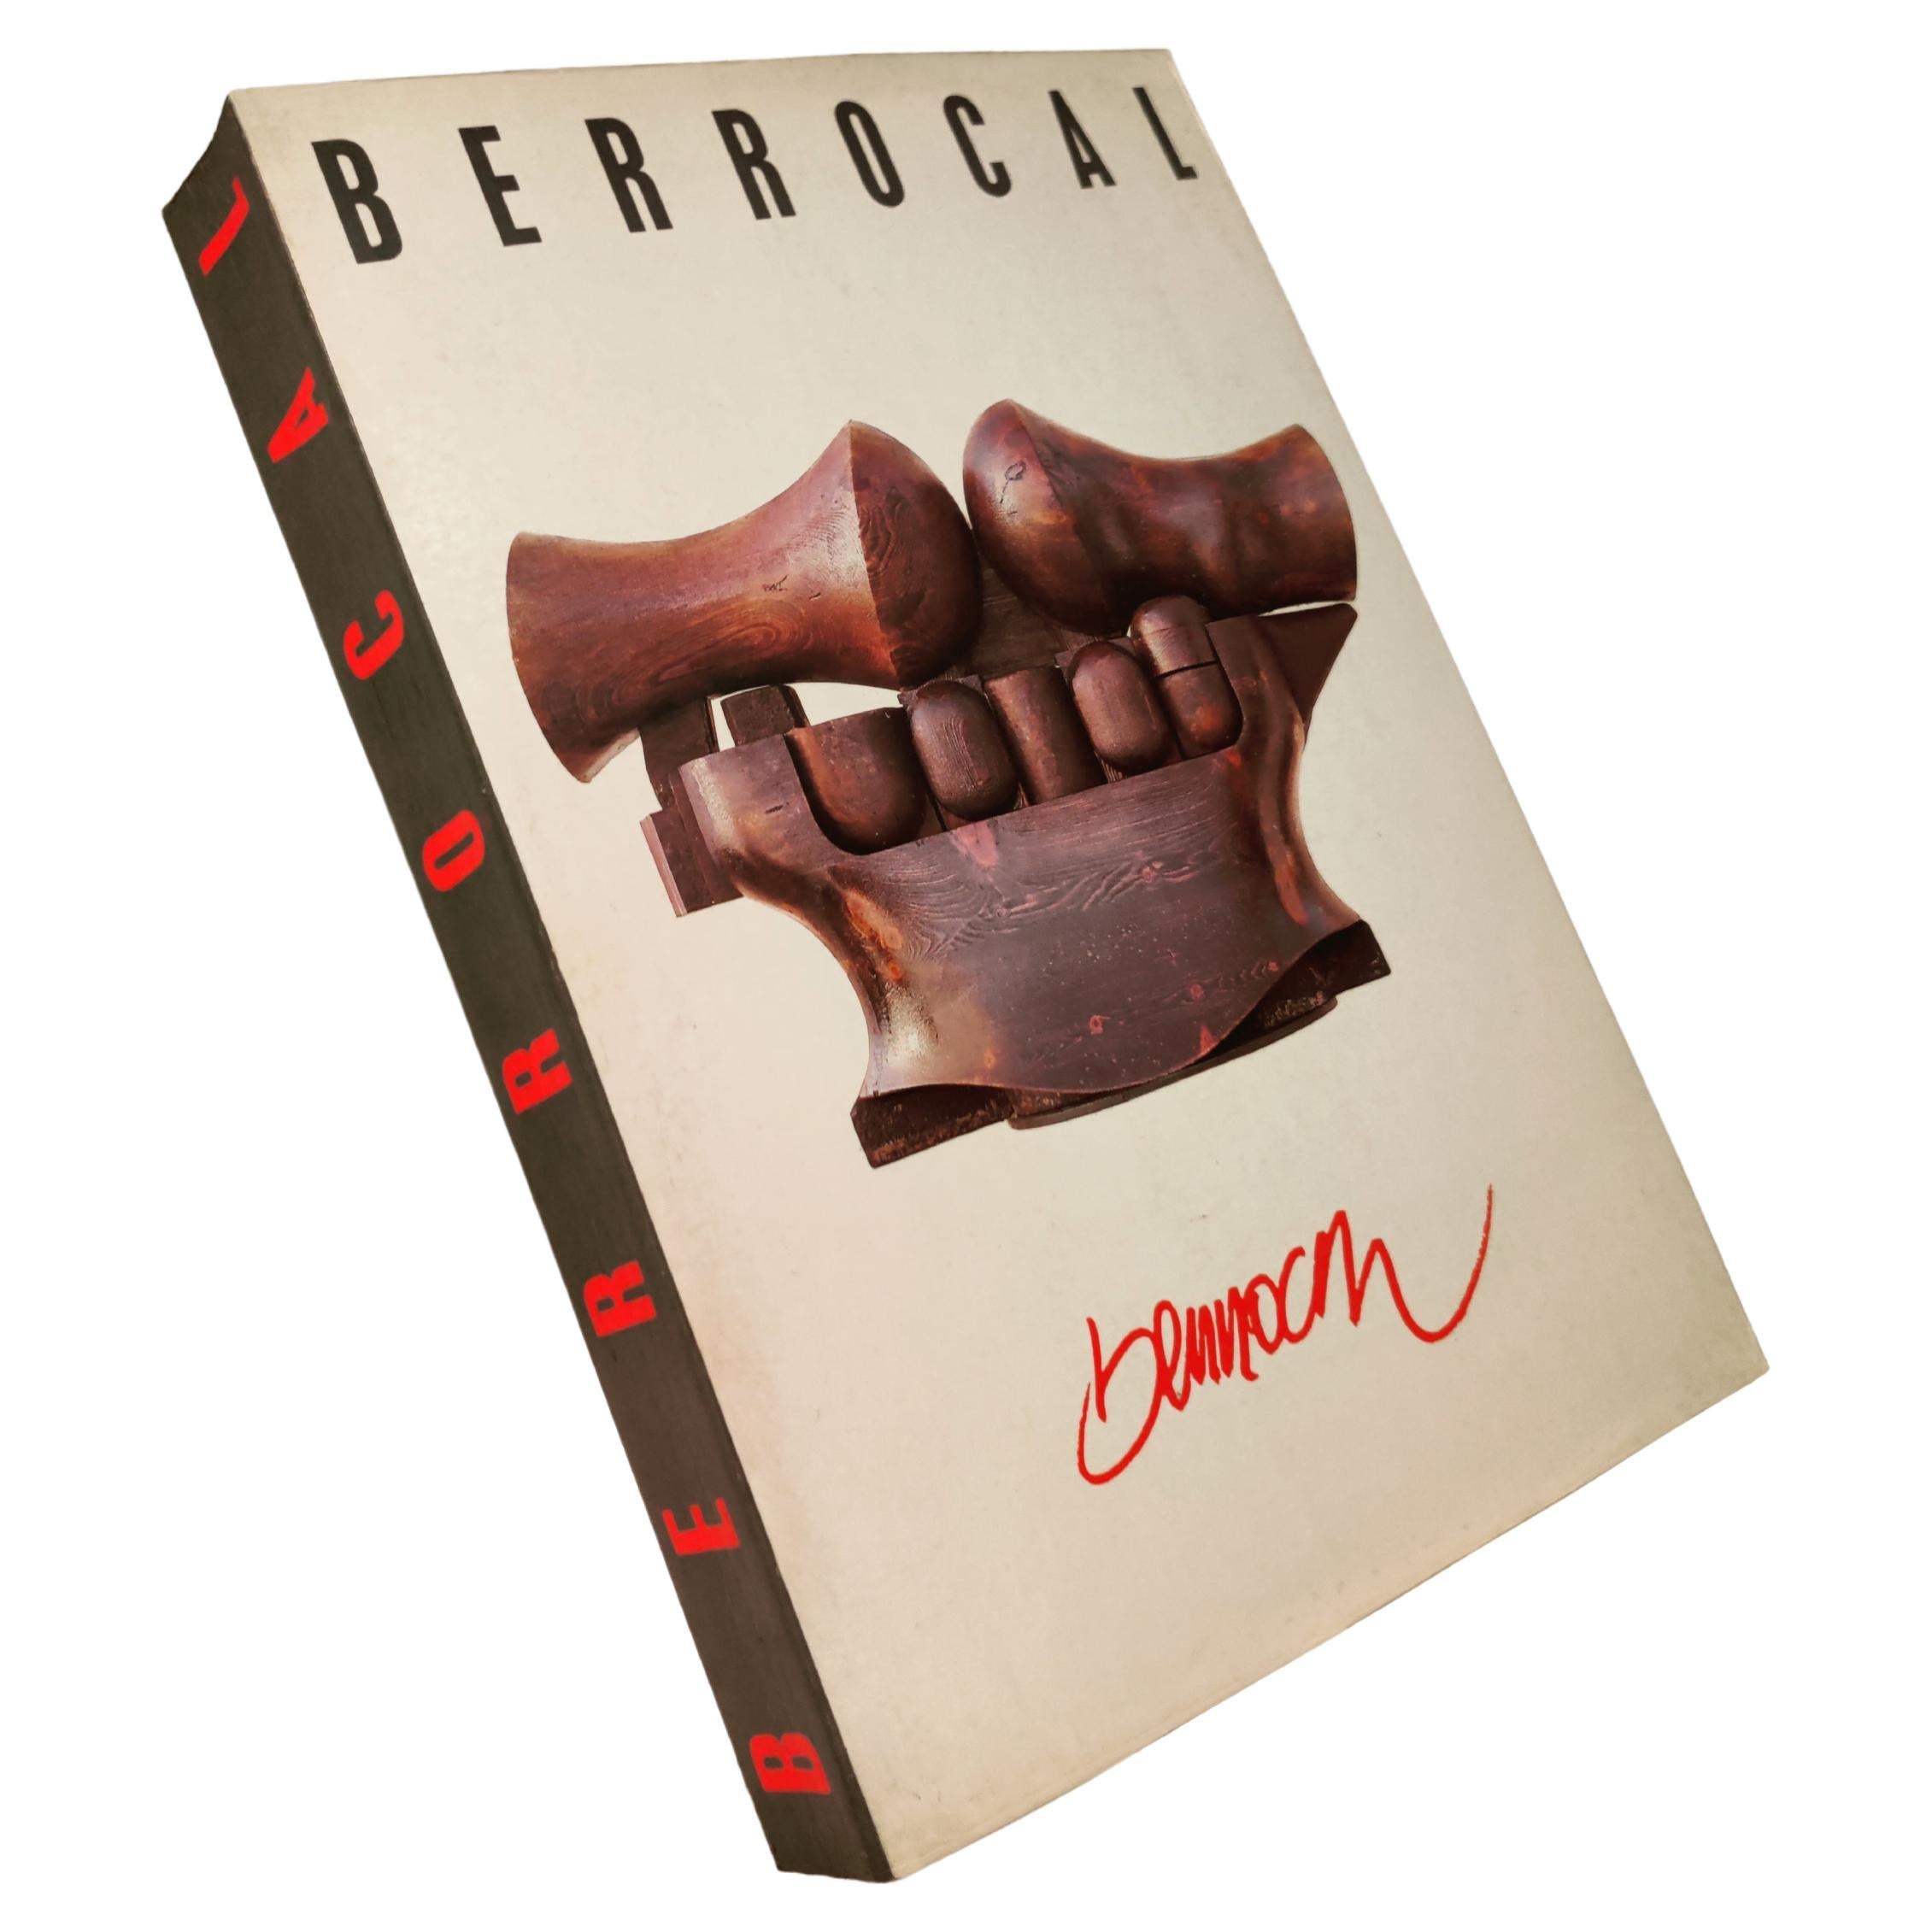 Exclusive Book Antológica Berrocal 1955-84 Sculptures & Work of Miguel Berrocal